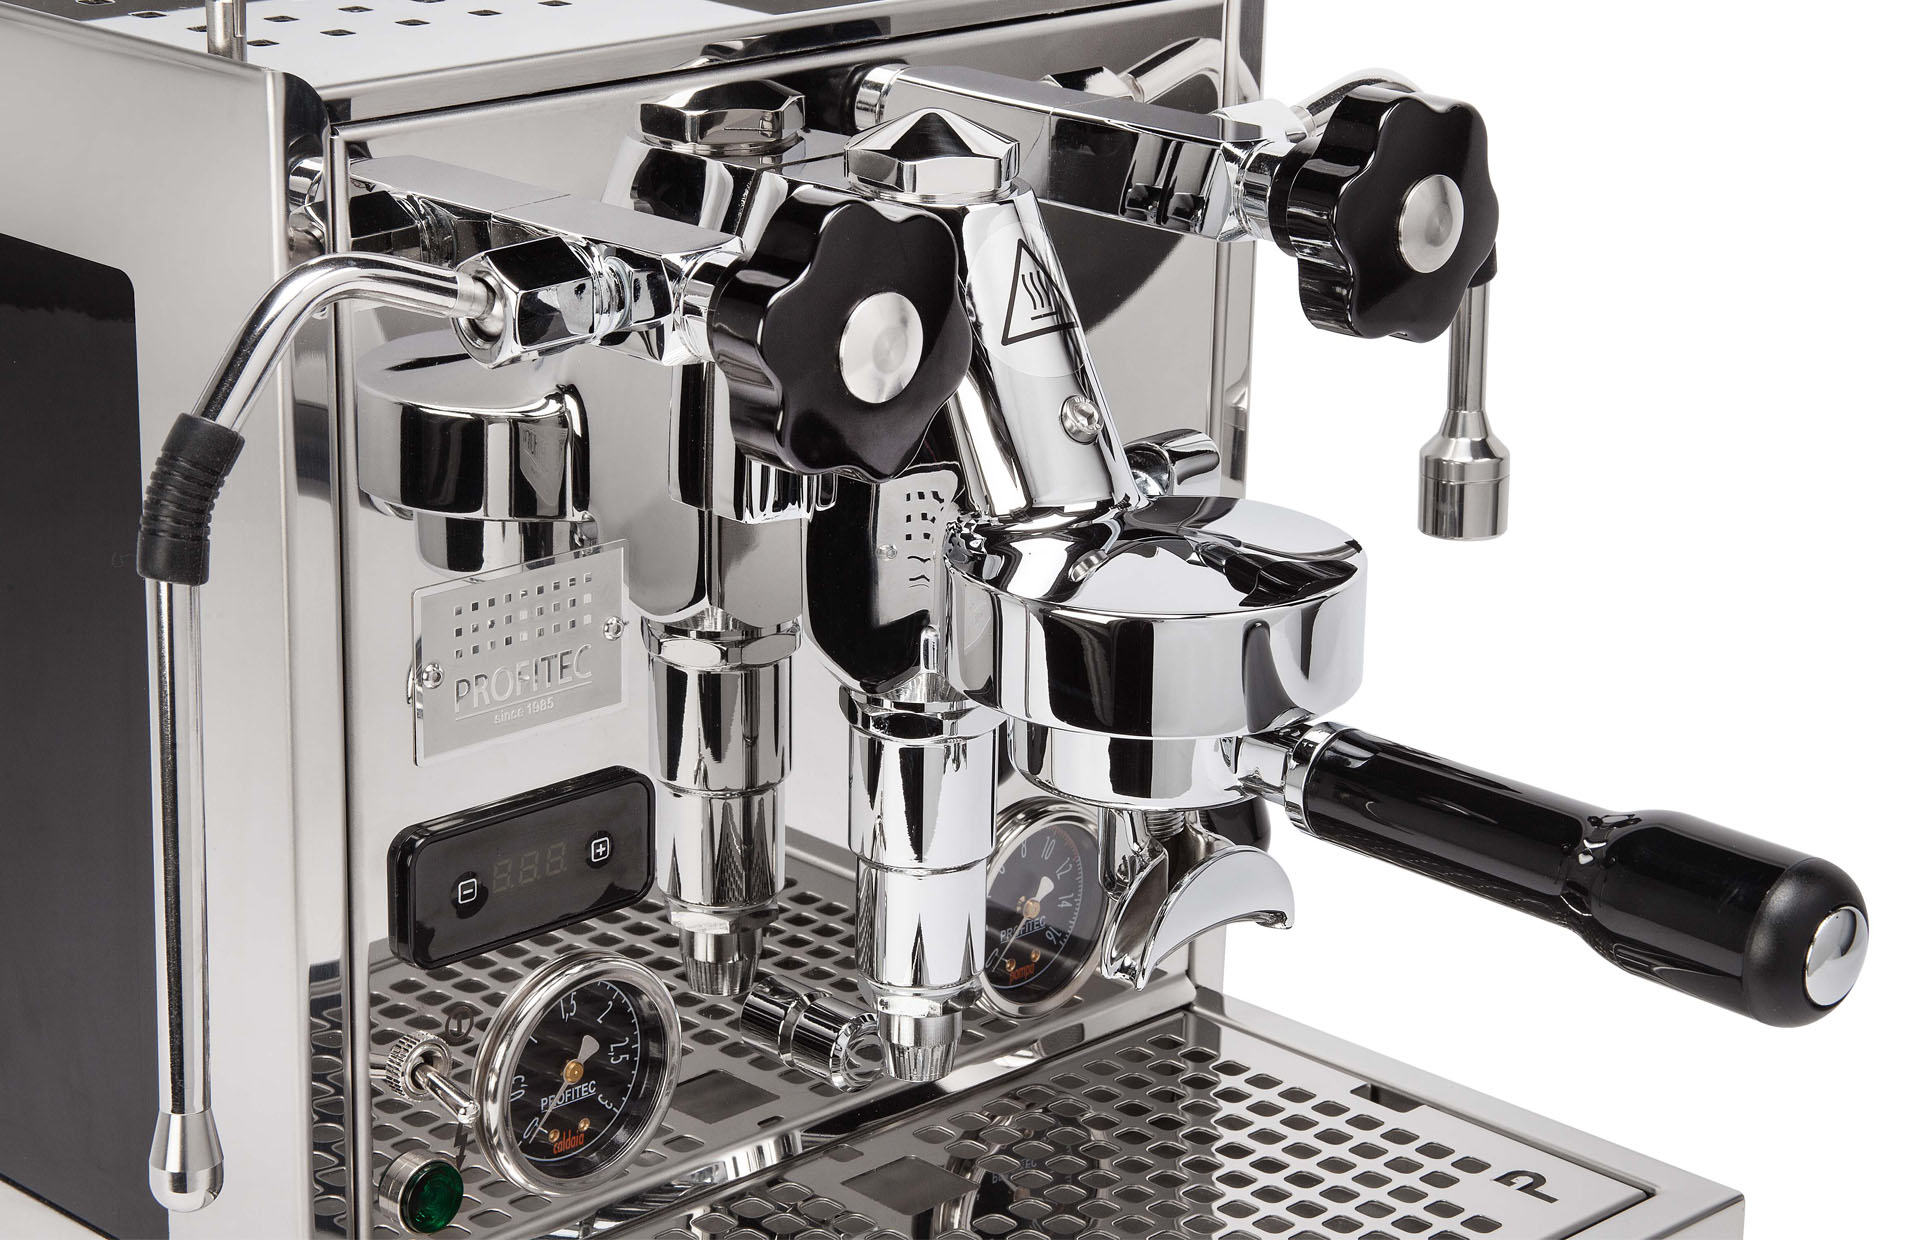 Profitec Pro 600 PID Dualboiler Espressomaschine